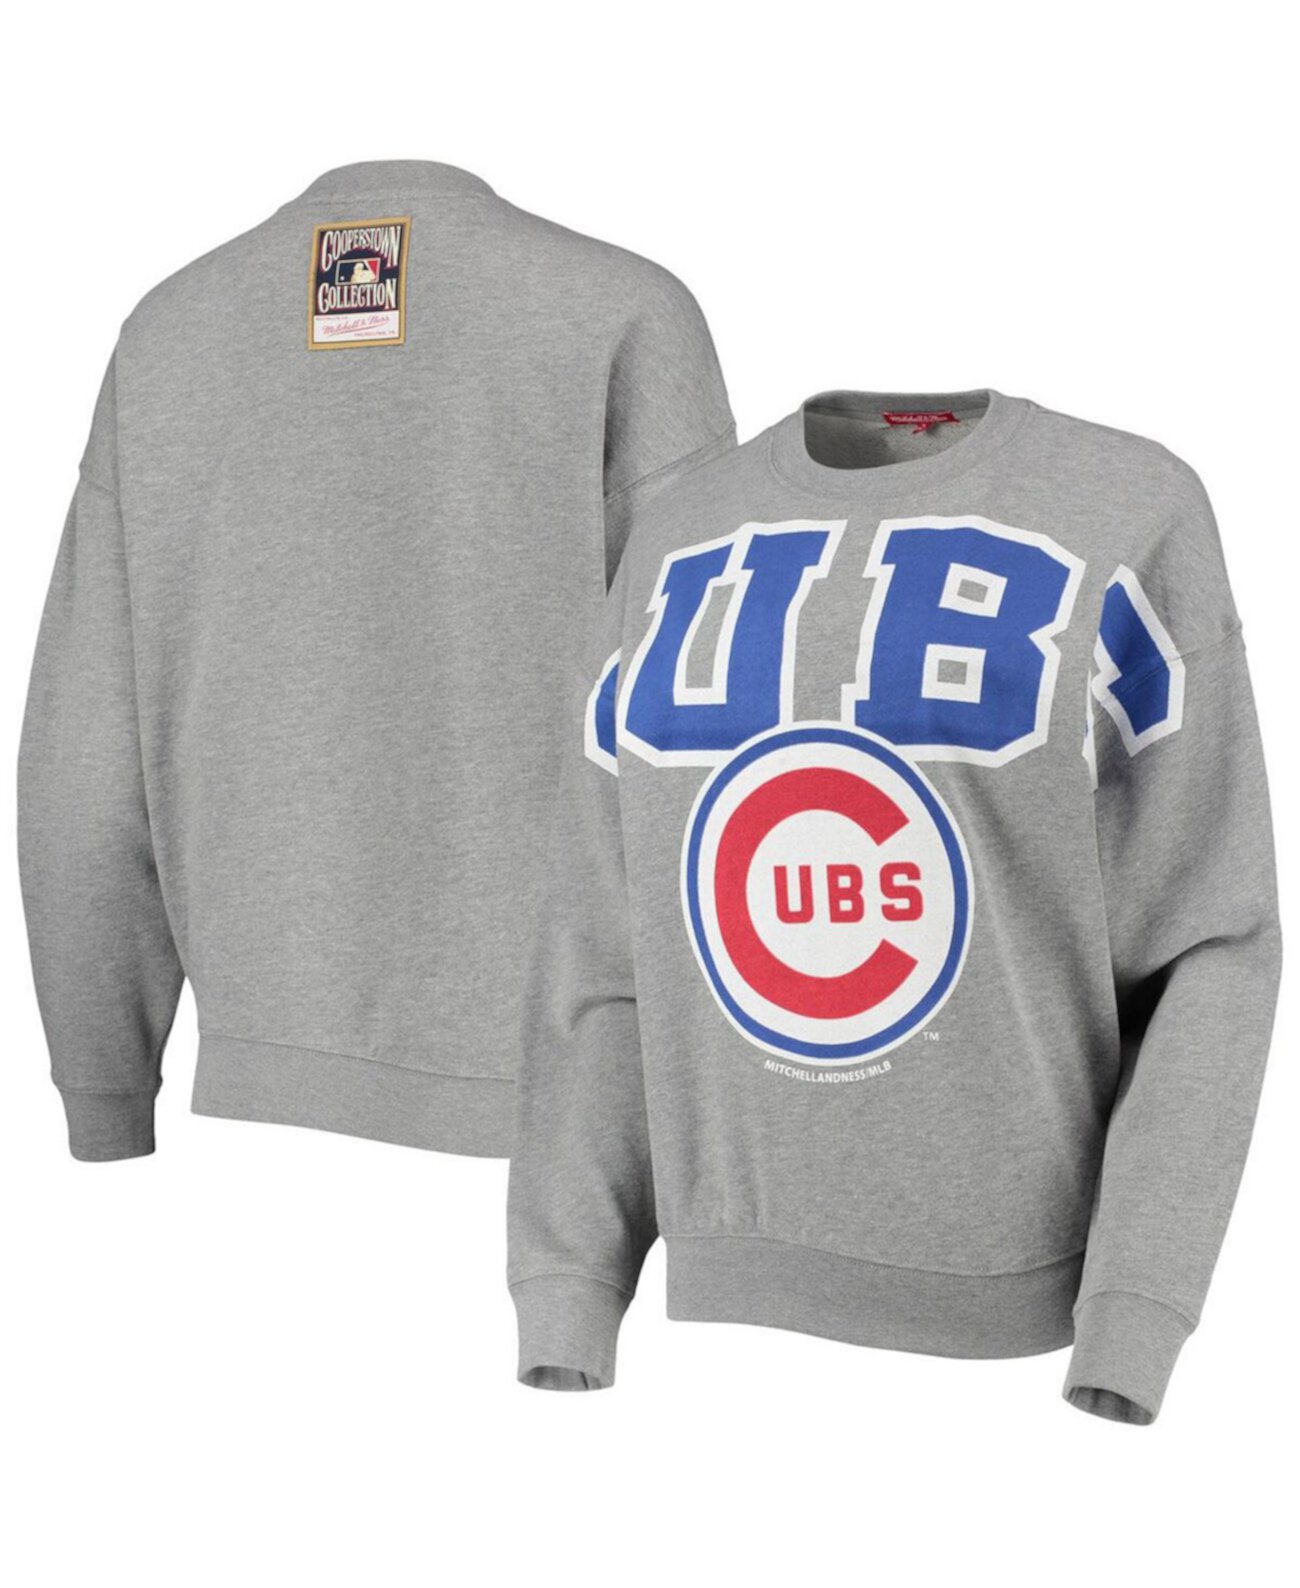 Легкий пуловер с логотипом из коллекции Chicago Cubs Cooperstown для женщин серого меланжевого цвета Mitchell & Ness